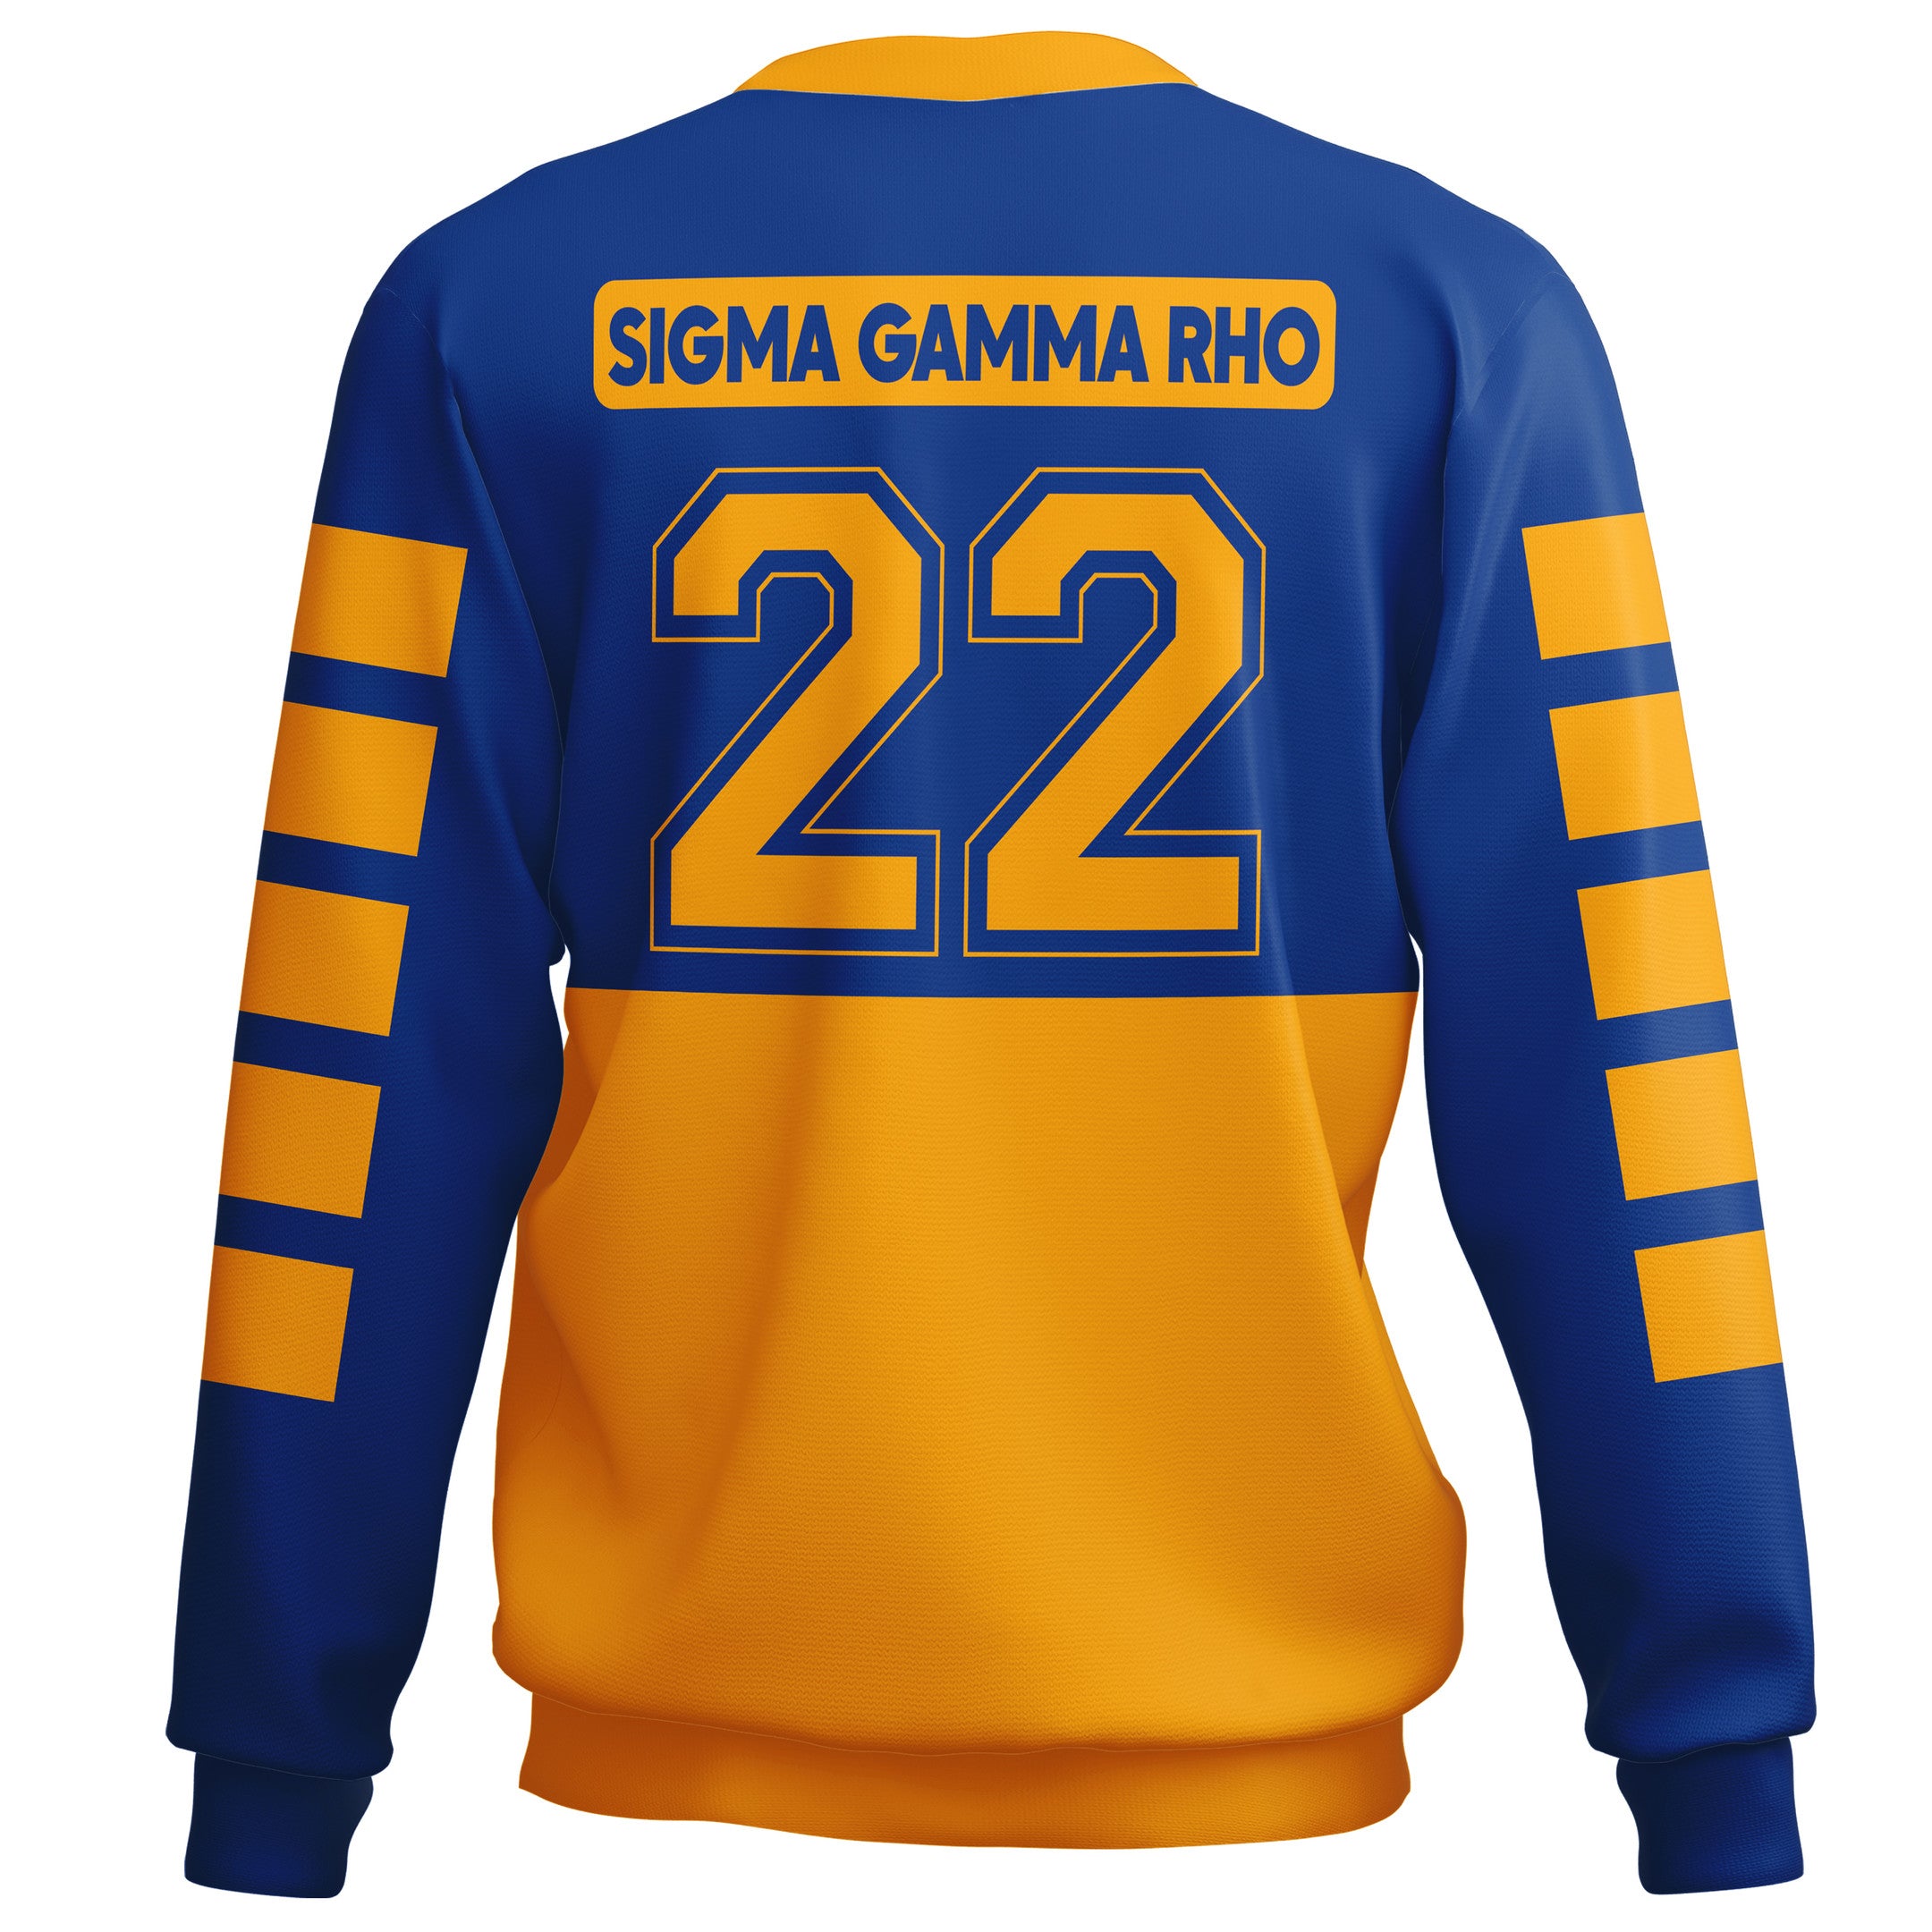 Sorority Sweatshirt - Sigma Gamma Rho Sporty Premium Sweatshirt